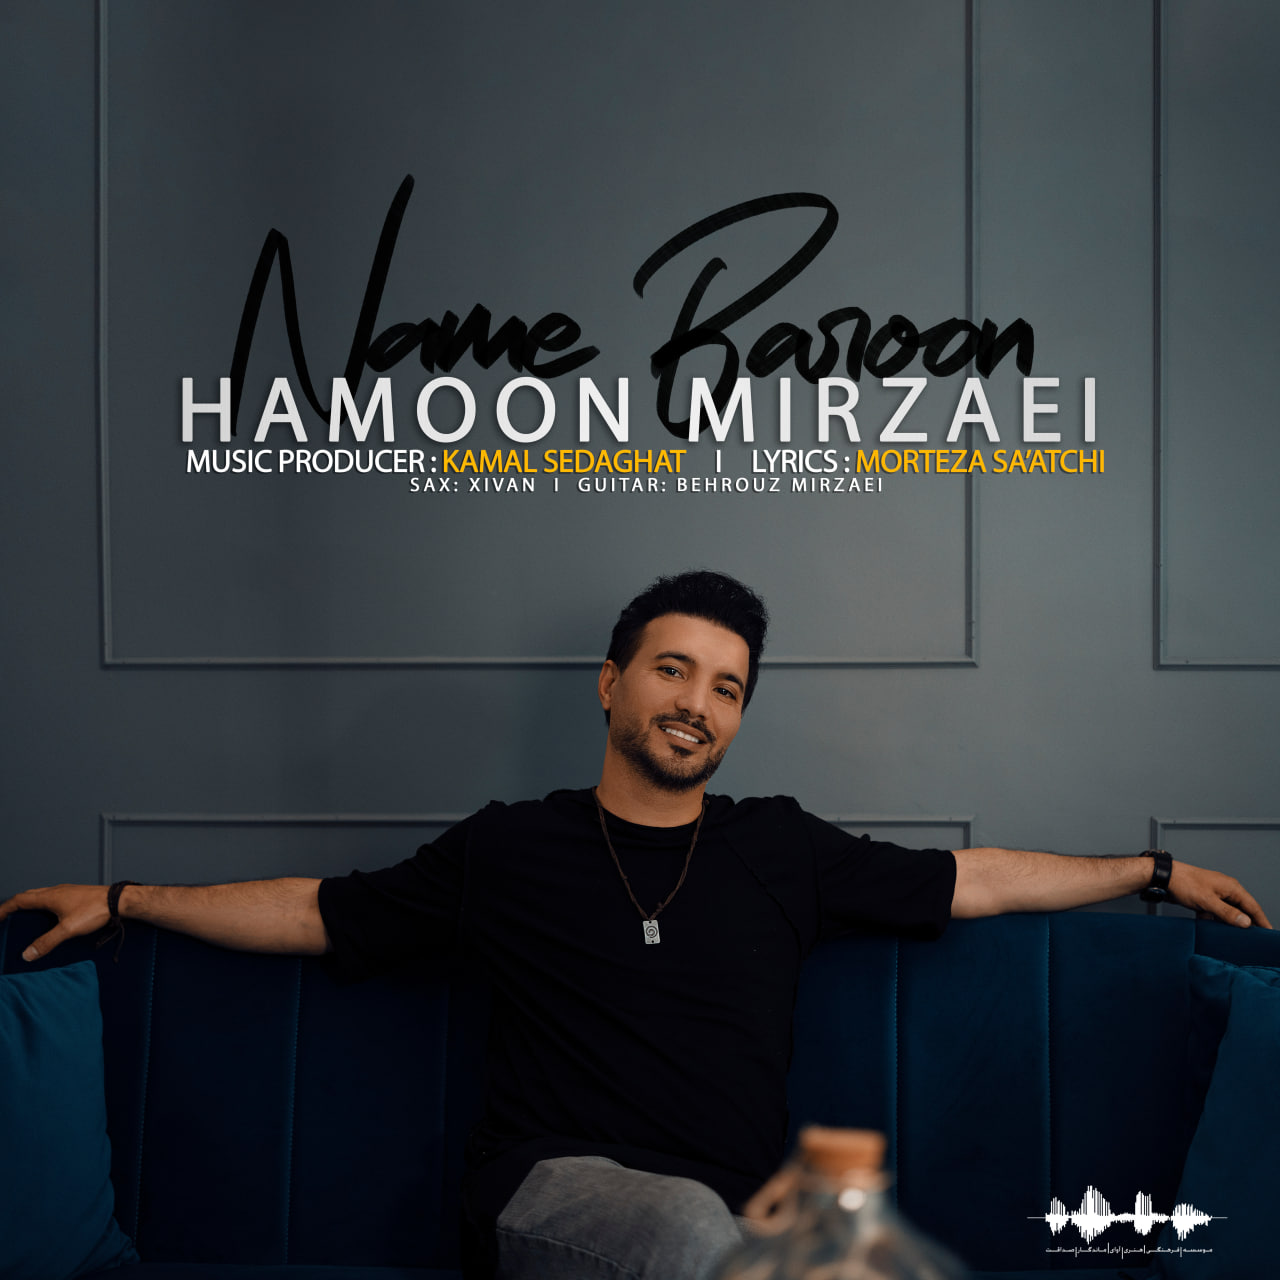 دانلود آهنگ جدید مهدی احمدوند به نام غلط کردم دانلود با لینک مستقیم : کیفیت ۳۲۰ MP3  Hamoon Mirzaei – Name Baroon